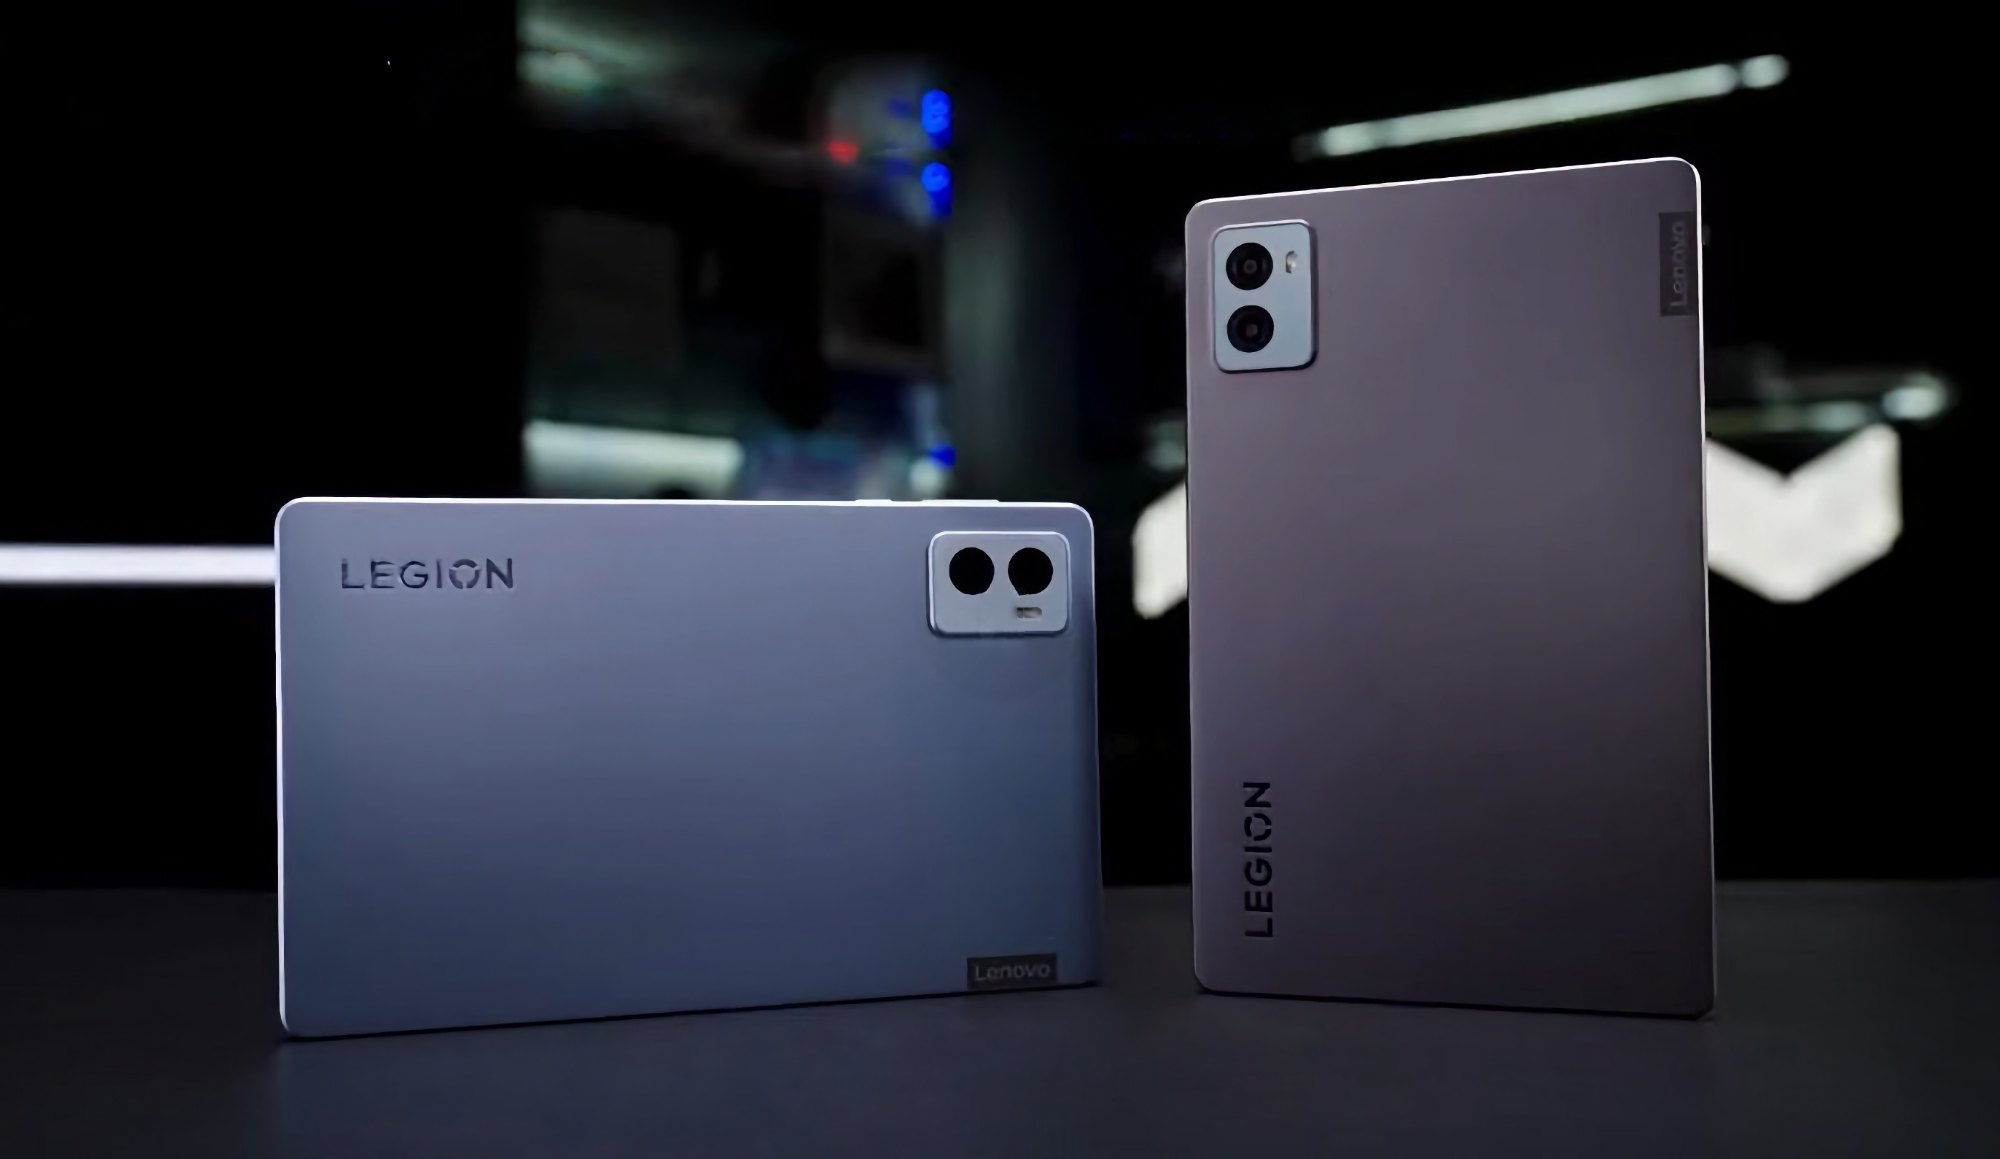 Quelques jours avant l'annonce : le Lenovo Legion Y700 (2023) avec une puce Snapdragon 8+ Gen 1 et deux ports USB-C est apparu dans une vidéo.